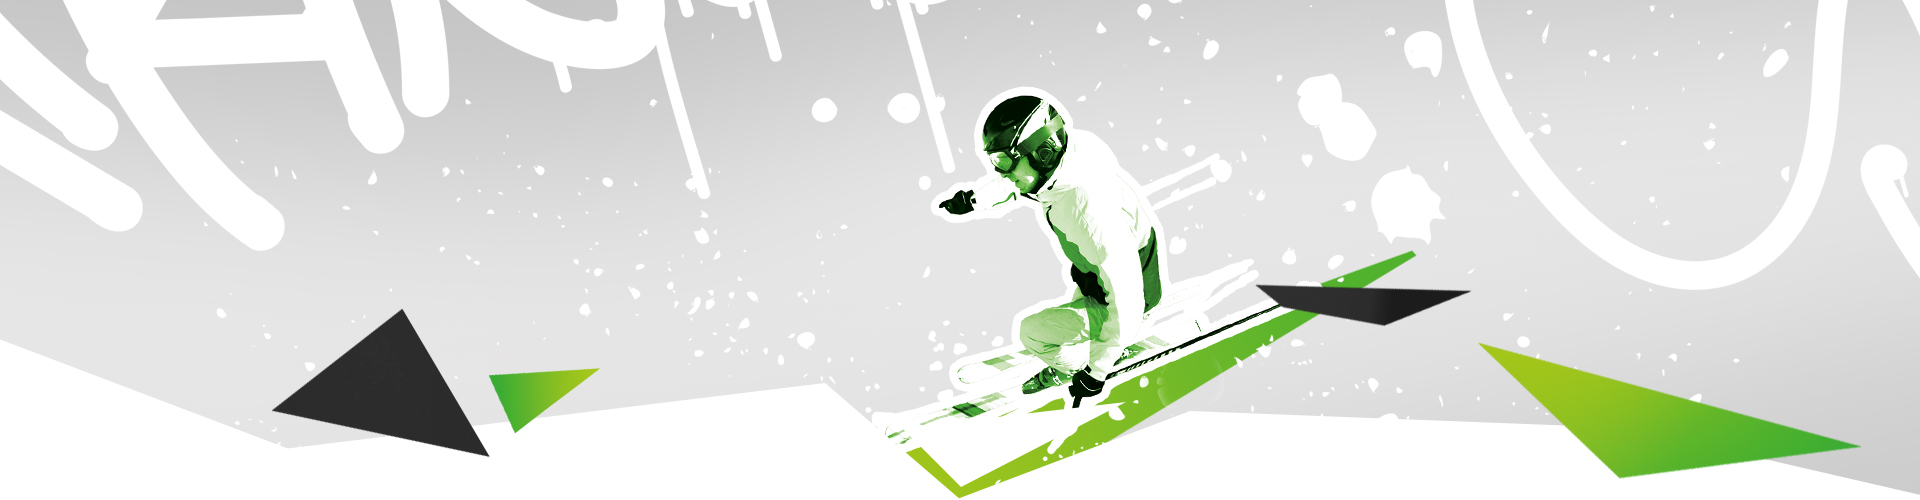 Circuito Coppa Italia Snowboard Categoria Baby